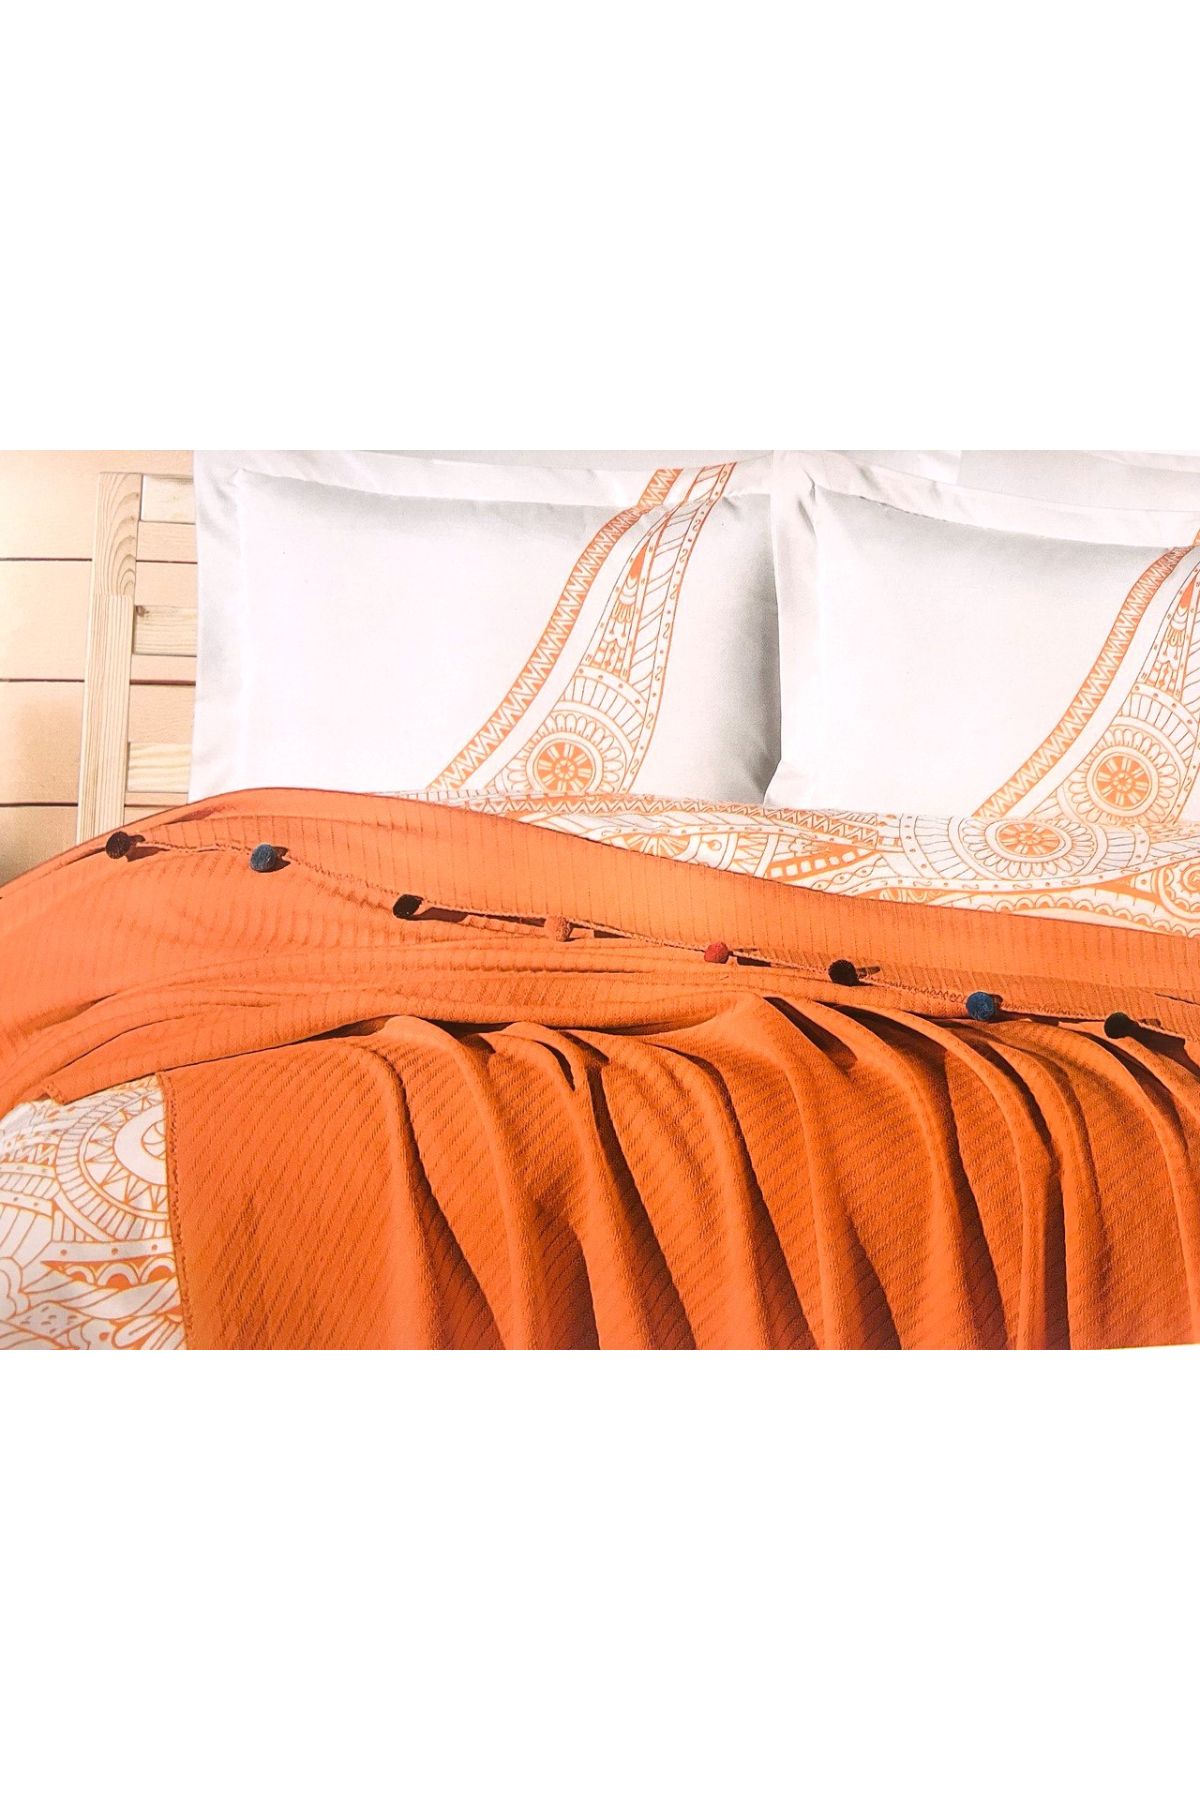 ENVOGUE Orange Ponponlu Pike Seti, Oda Kokusu Hediye ( Pike , Çarşaf , 2 Adet Yastık Kılıfı )